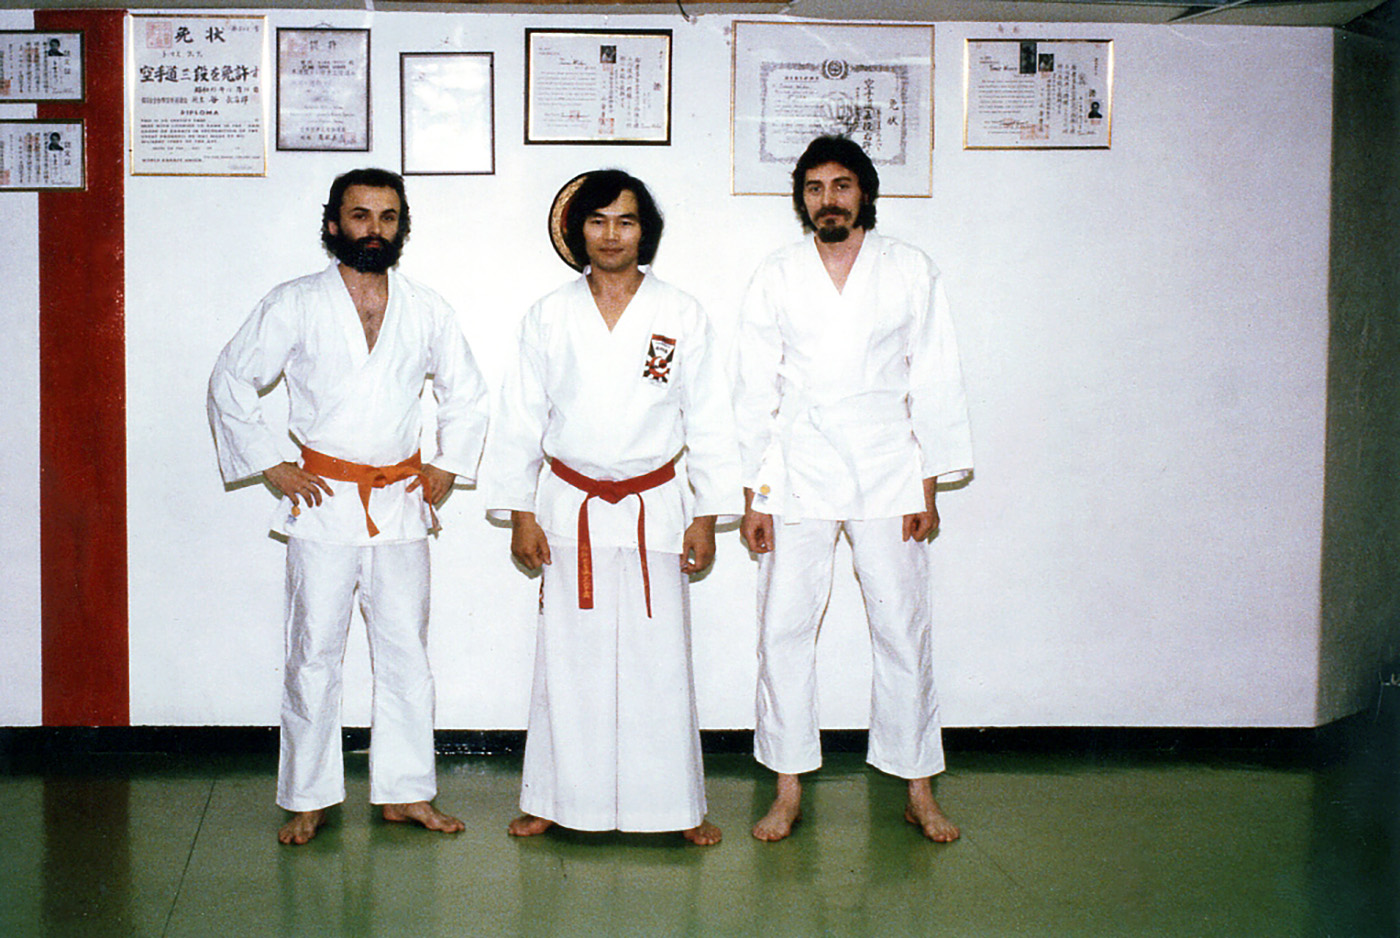 Začiatky karate - Klub Stockholm 1979. Veľmajster Yoshinao Nanbu 10. dan a vedľa neho zľava s bielym pásom J. Čuňo